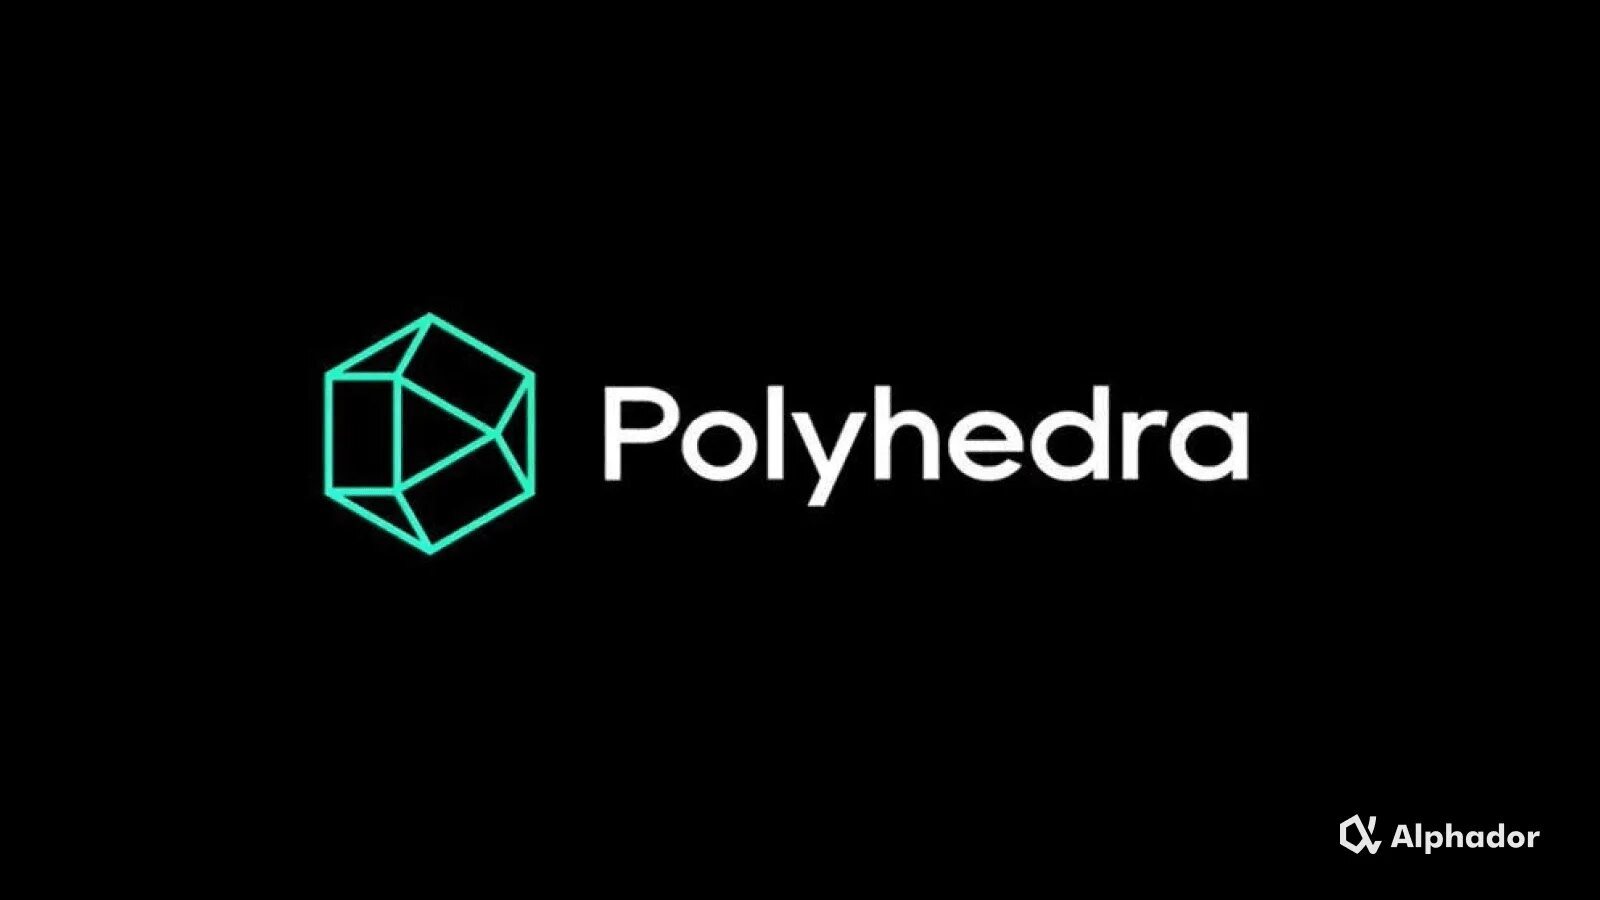 Alphador. Polyhedra zkbridge. Polyhedra Network. Polyhedra Network лого. Polyhedra лого.